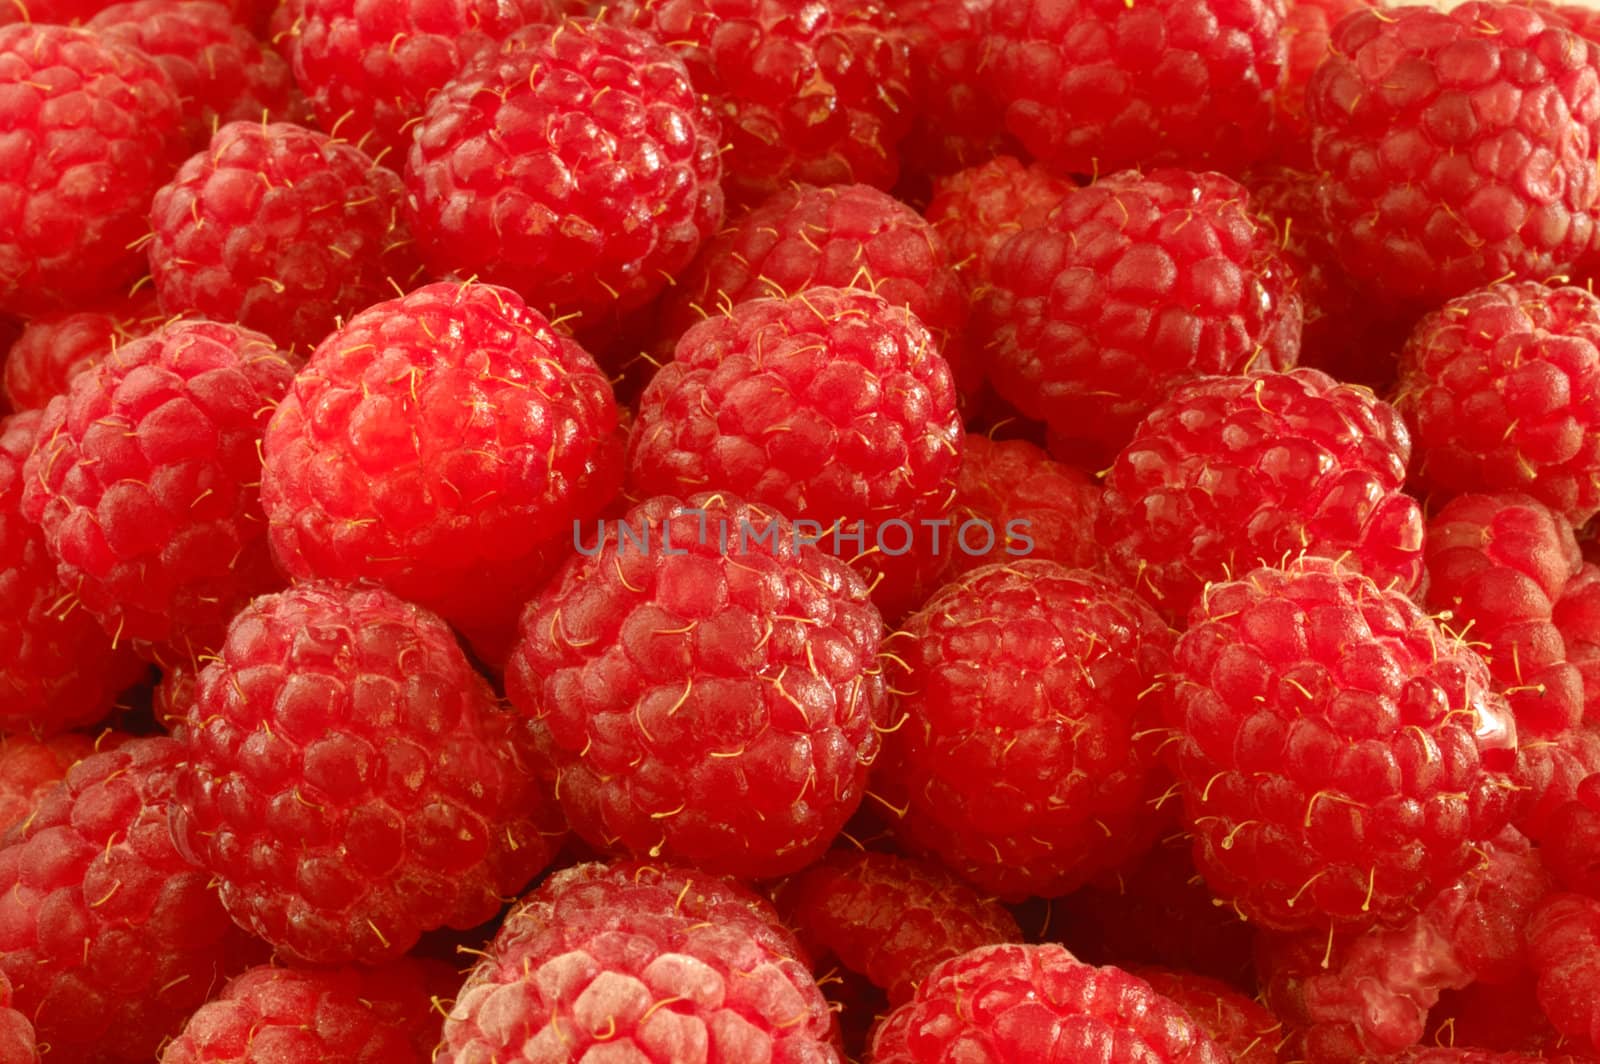 Ripe raspberries by Bateleur